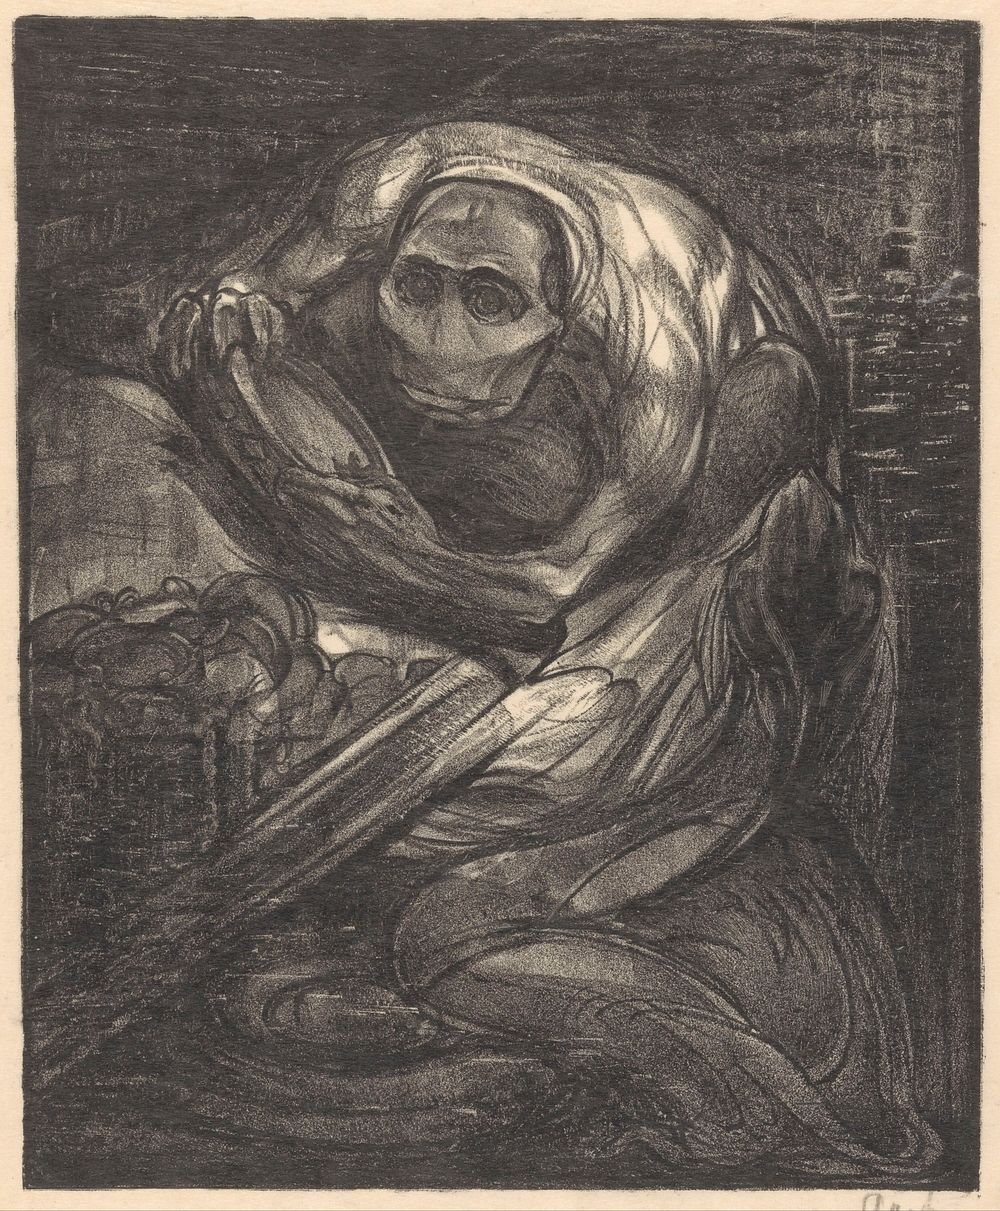 Monster met schaal (1881 - 1934) by Johannes Josephus Aarts